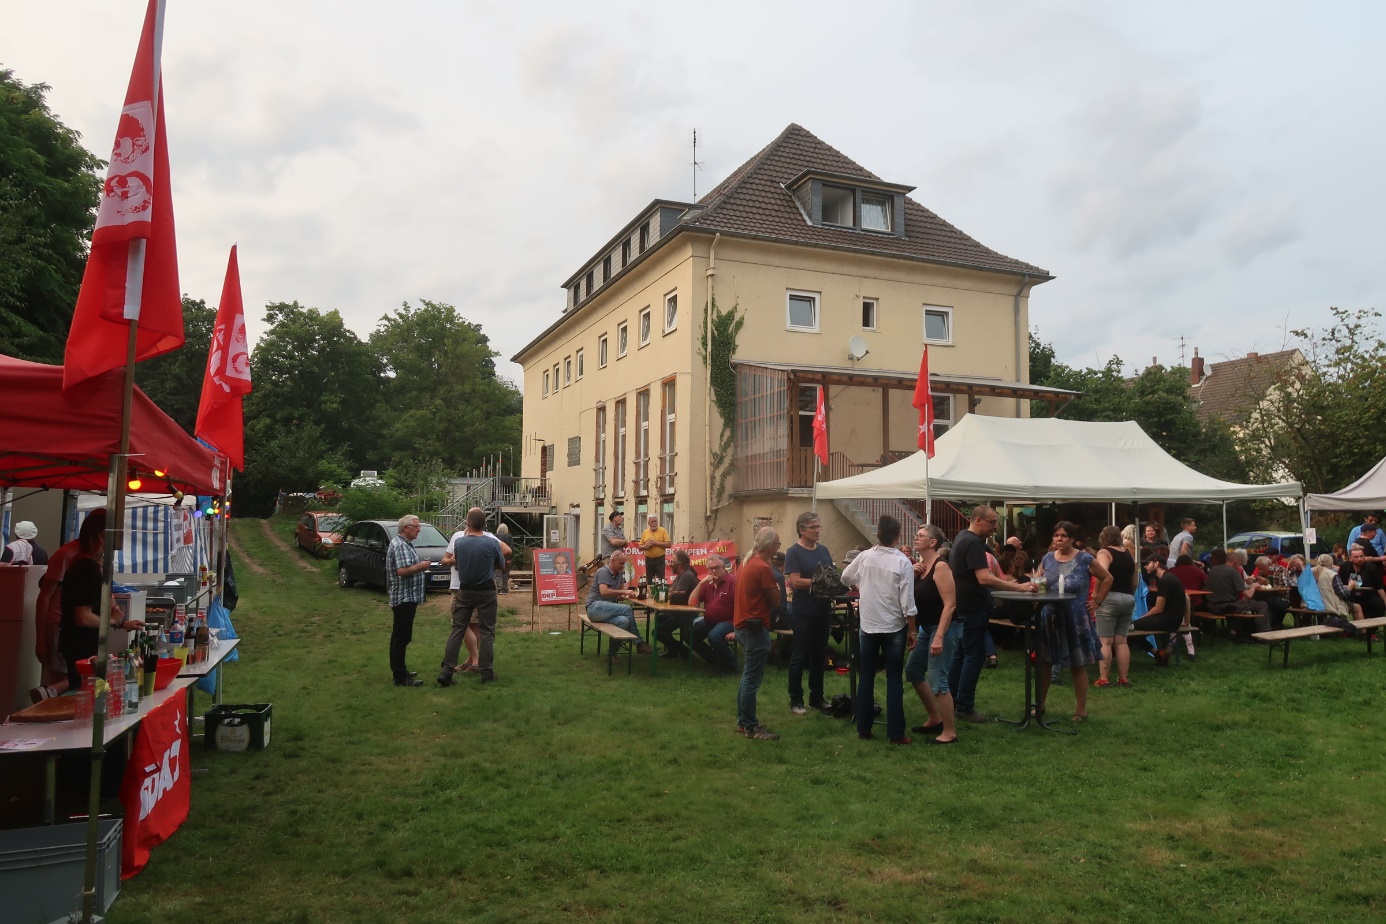 ggg - Ein gelungenes Fest - DKP, Sommerfest - Blog, DKP in Aktion